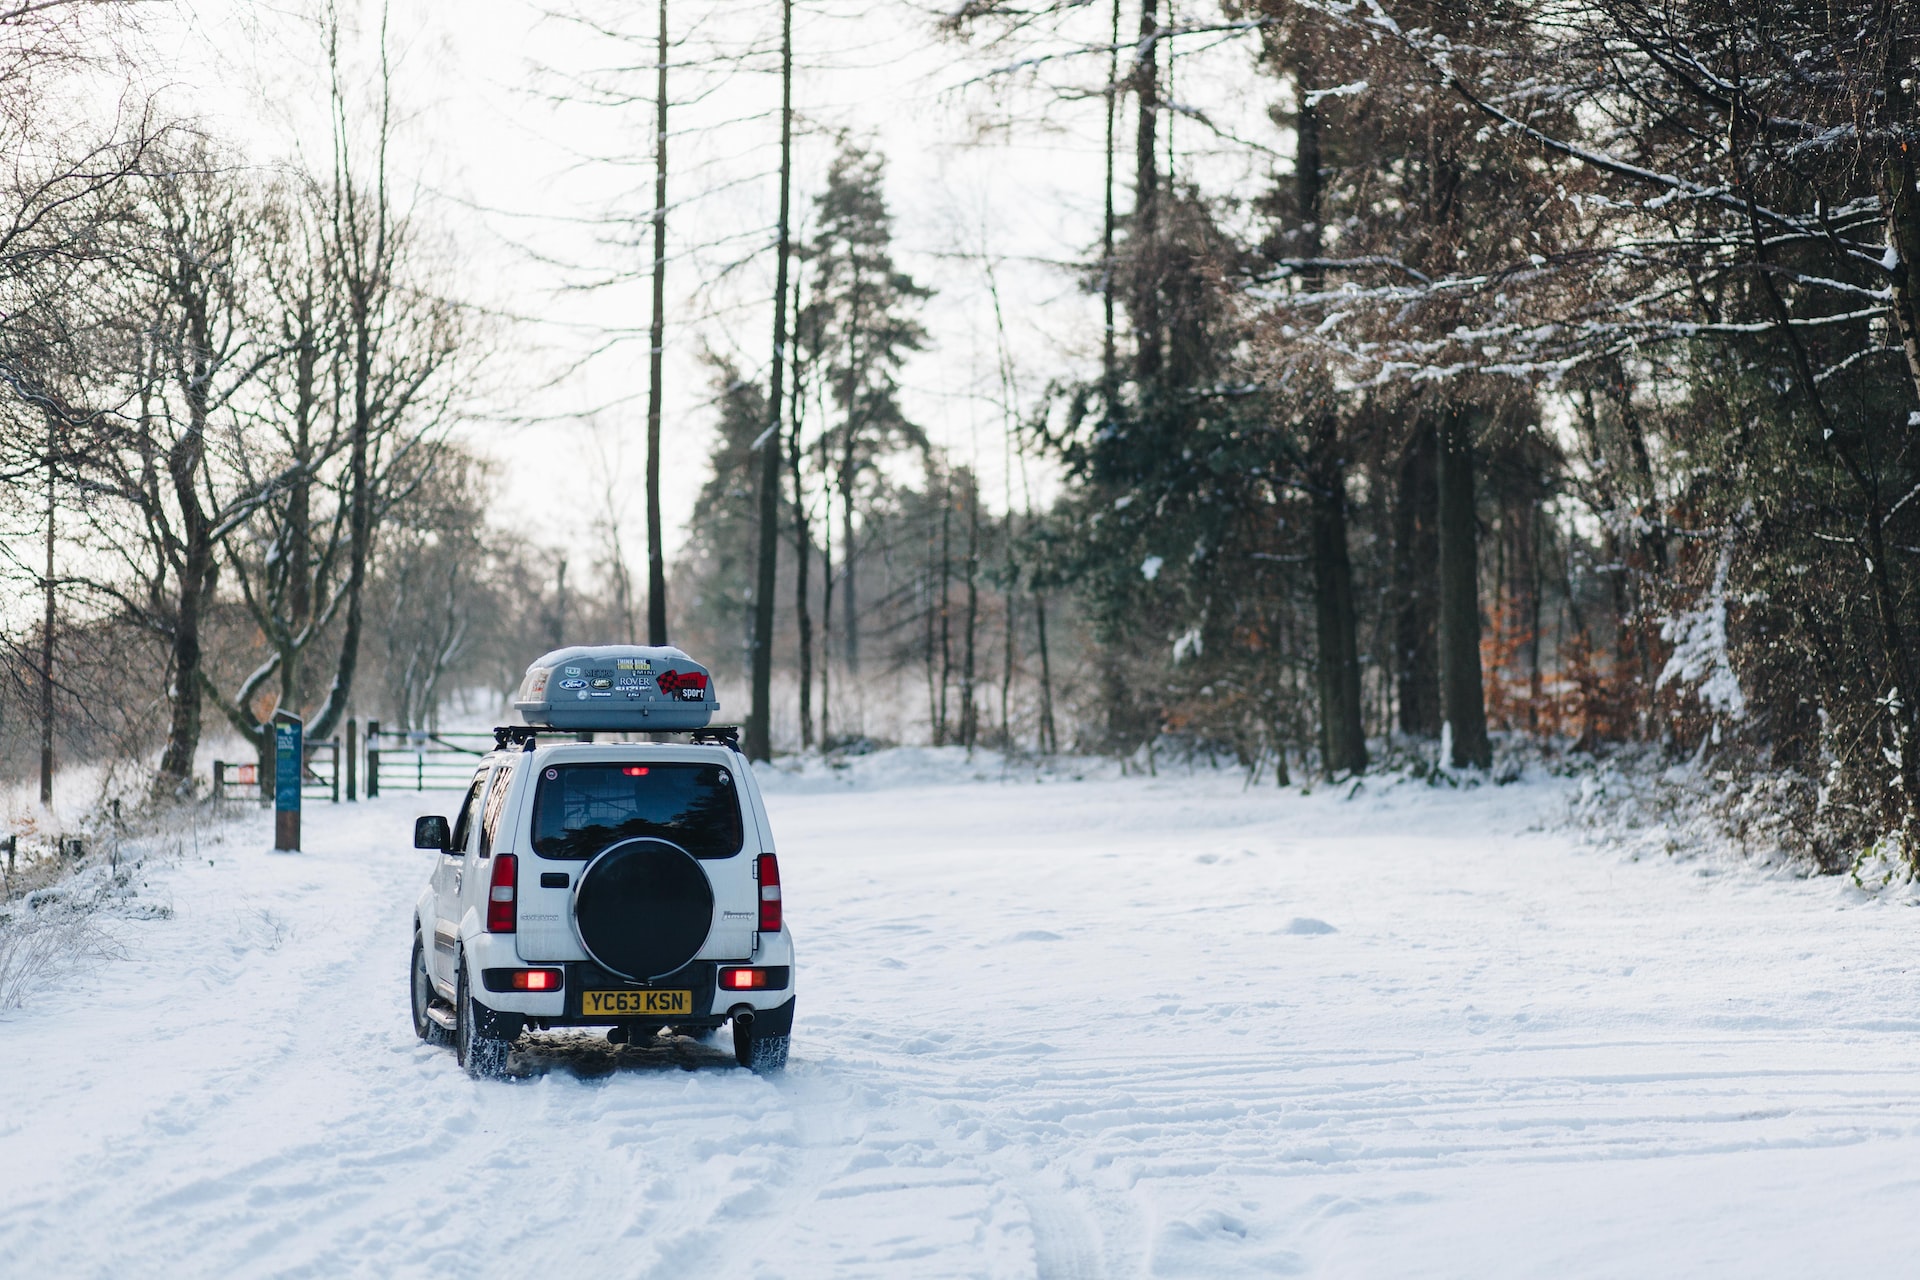 Zimowa podróż autem – jak przewieźć sprzęt narciarski?